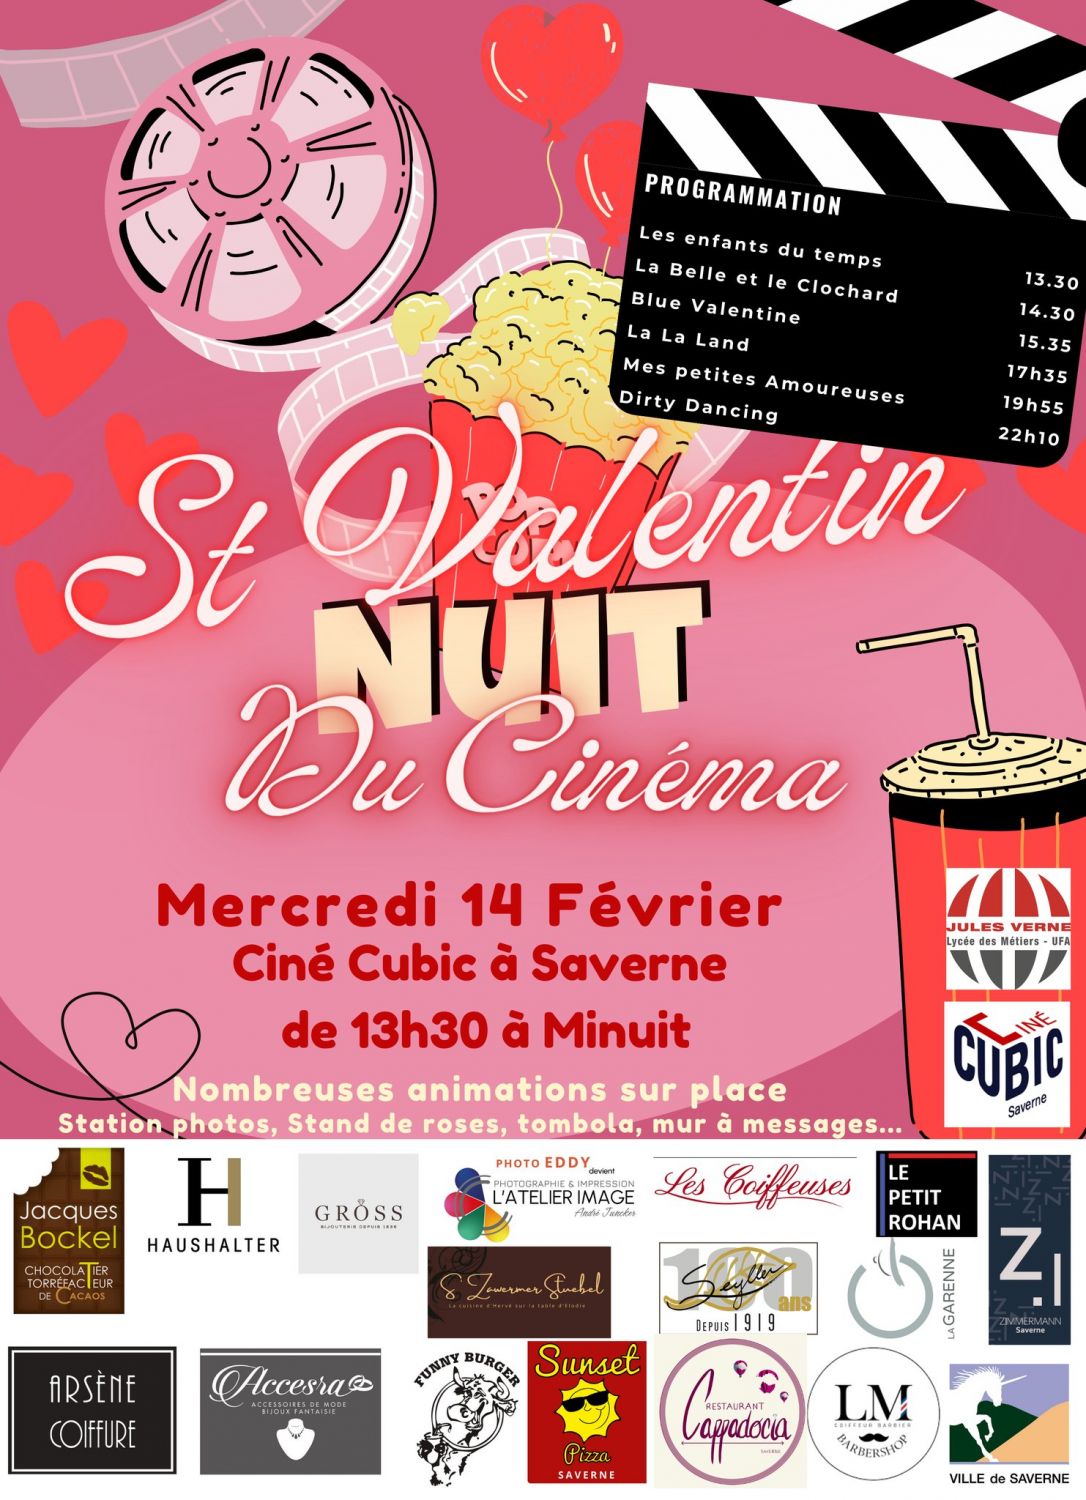 Le ciné public à Saverne propose une nuit du cinéma pour la Saint Valentin 